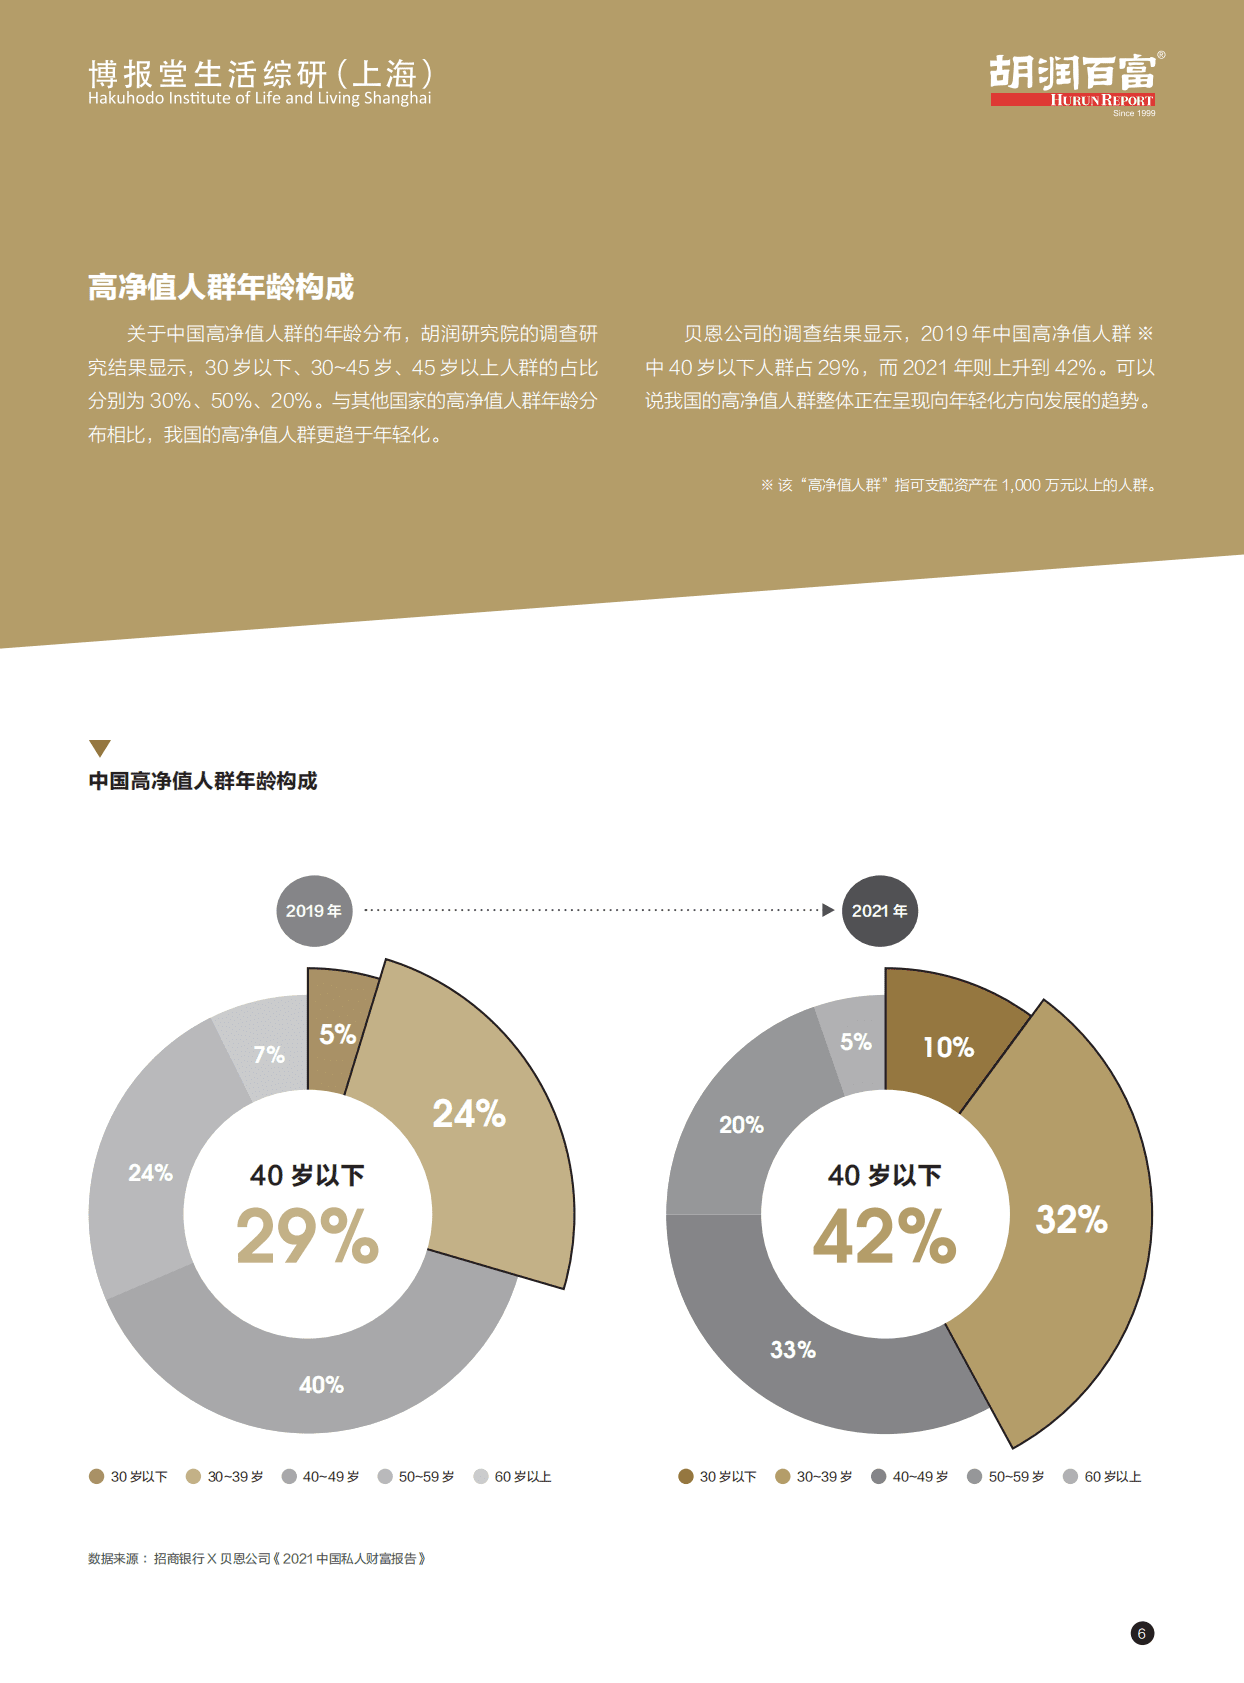 中国家庭发展报告(2016)_百度百科